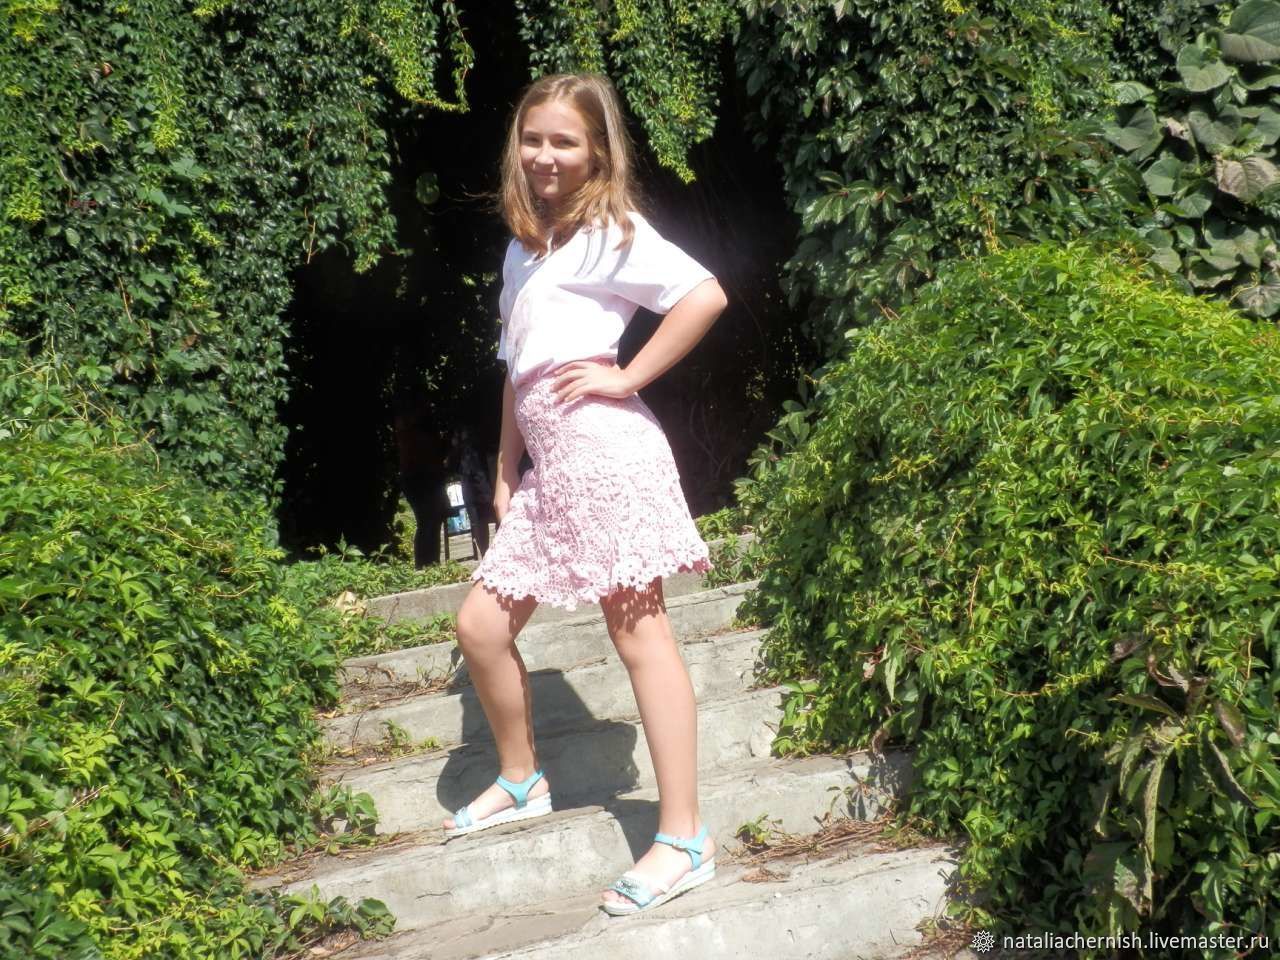 Skirts For Girls Craft Skirts For Baby Girl Skirts For Girls Kids Kupit Na Yarmarke Masterov Gp6i9com Yubki Nikolaev